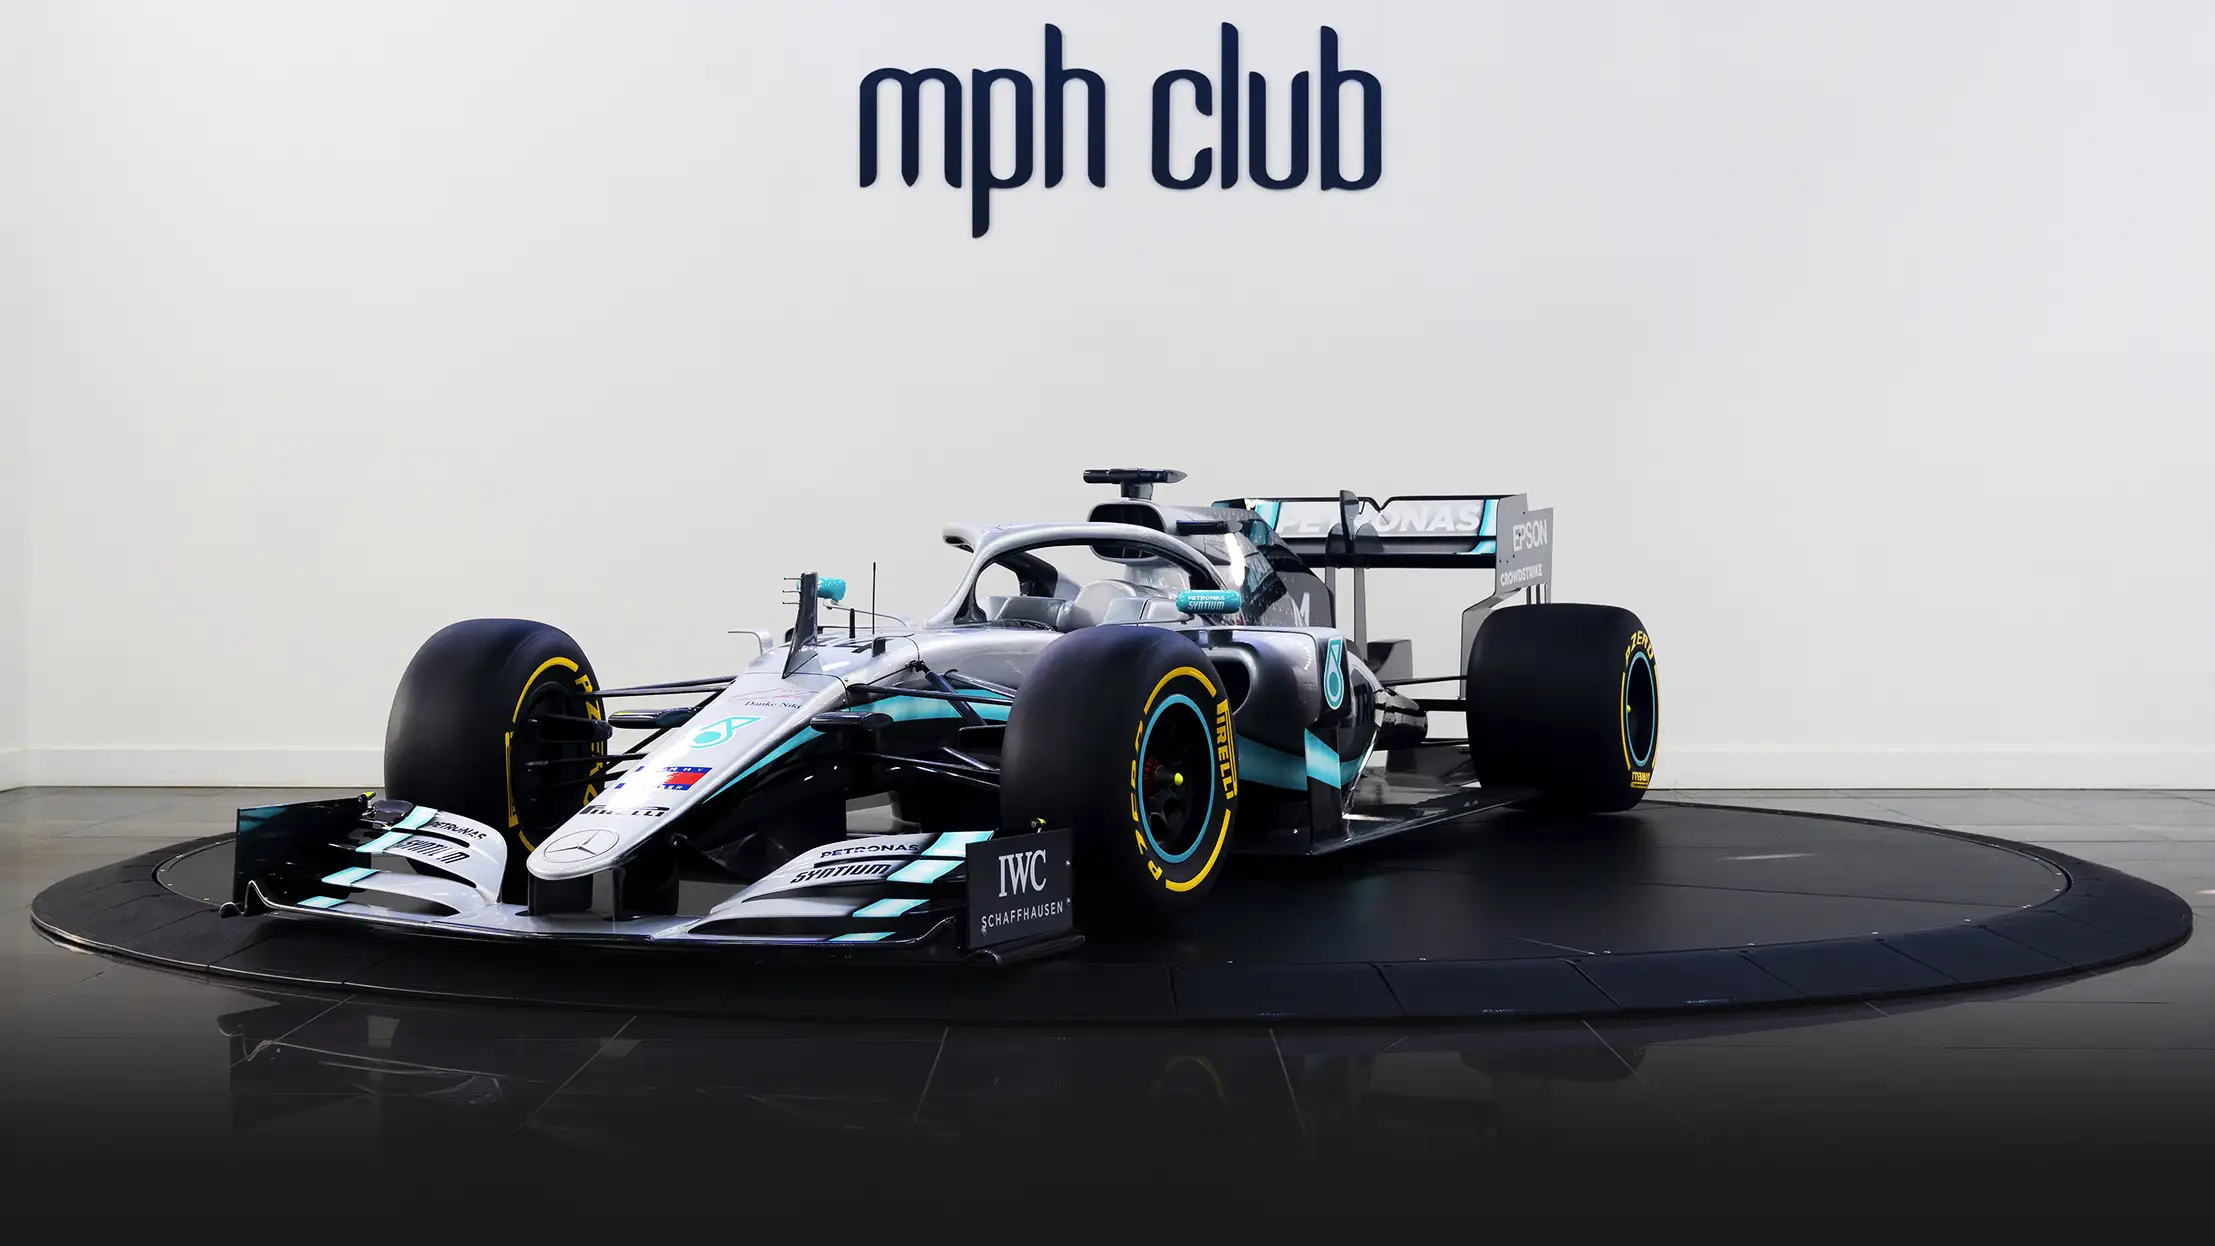 F1 W10 Mercedes AMG Petronas profile view mph club